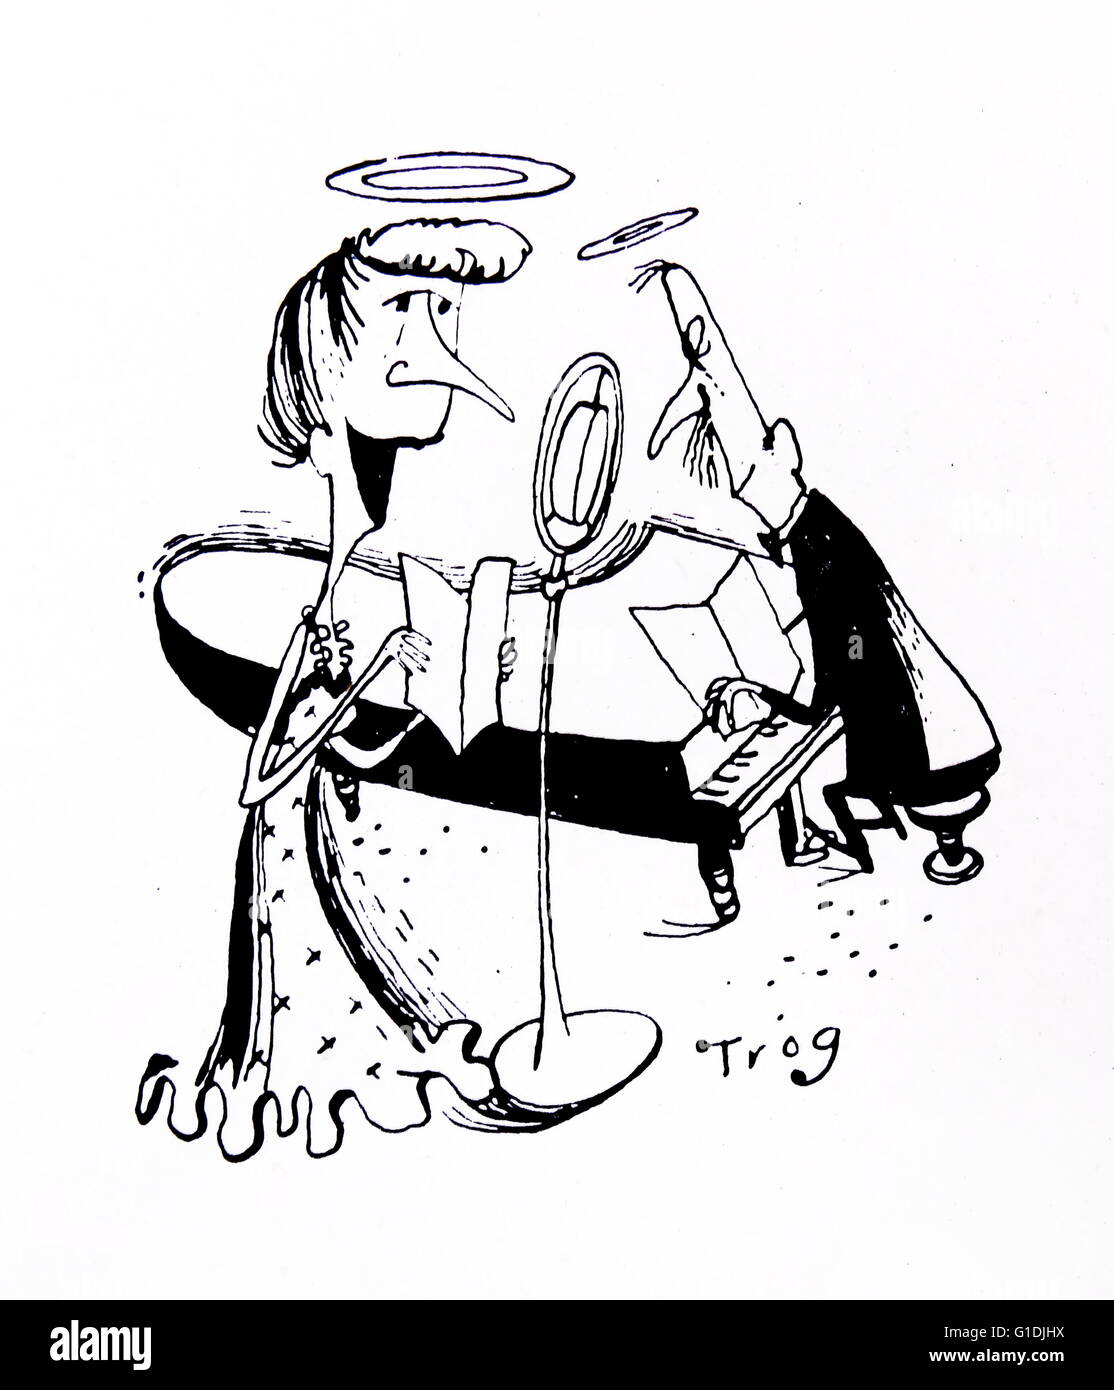 Caricatura de una mujer cantando a un pianista acompañante; por Walter Ernest 'Wally' Fawkes (nacido en 1924). British-Canadian clarinetista de jazz y un dibujante satírico. Como dibujante, ha trabajado generalmente bajo el nombre de "Trog' . Foto de stock